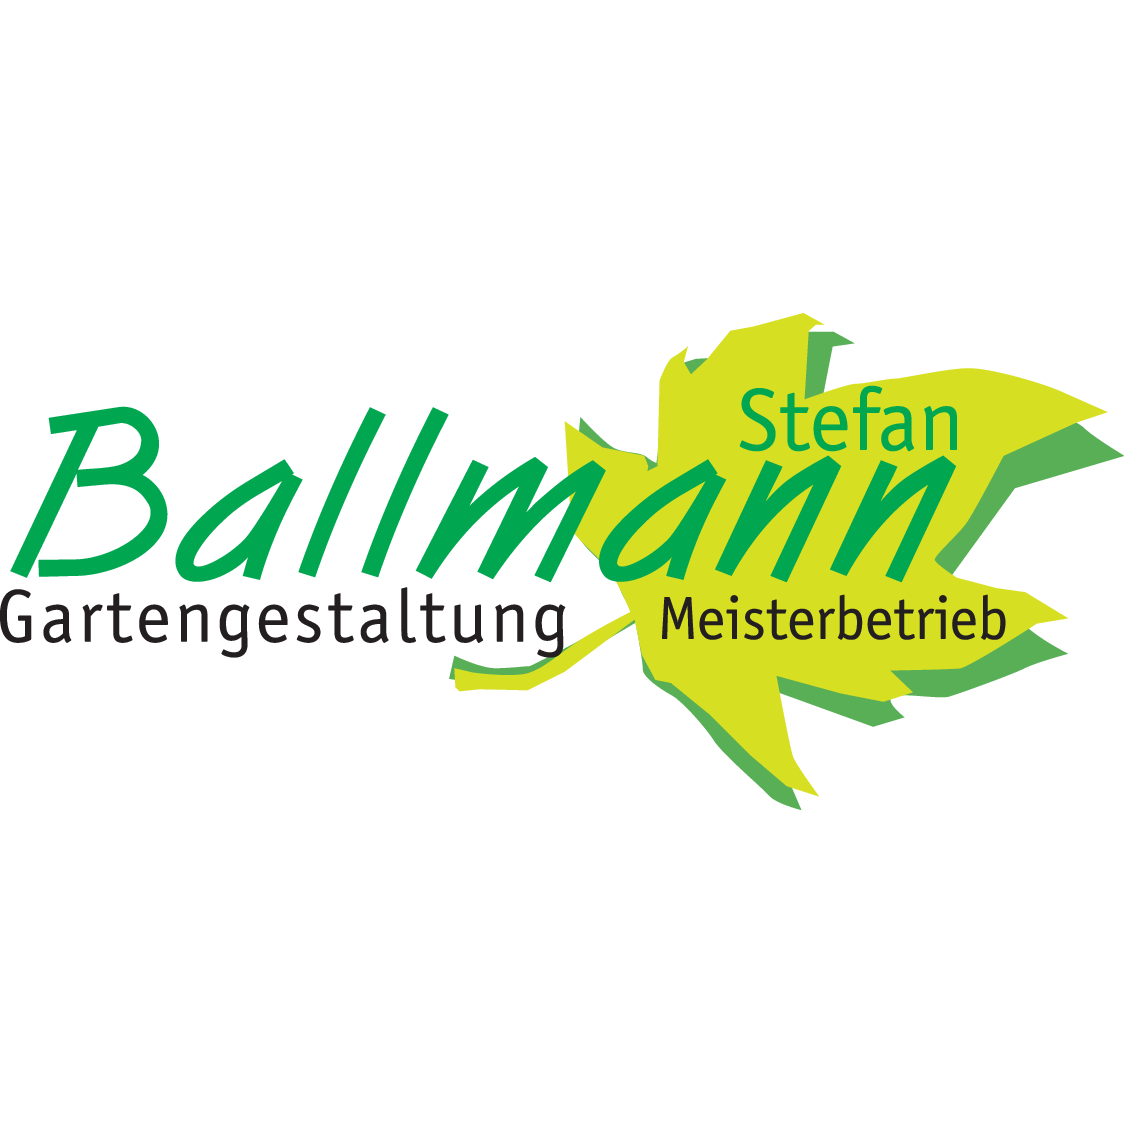 Ballmann Stefan Gartengestaltung Meisterbetrieb in Elsenfeld - Logo